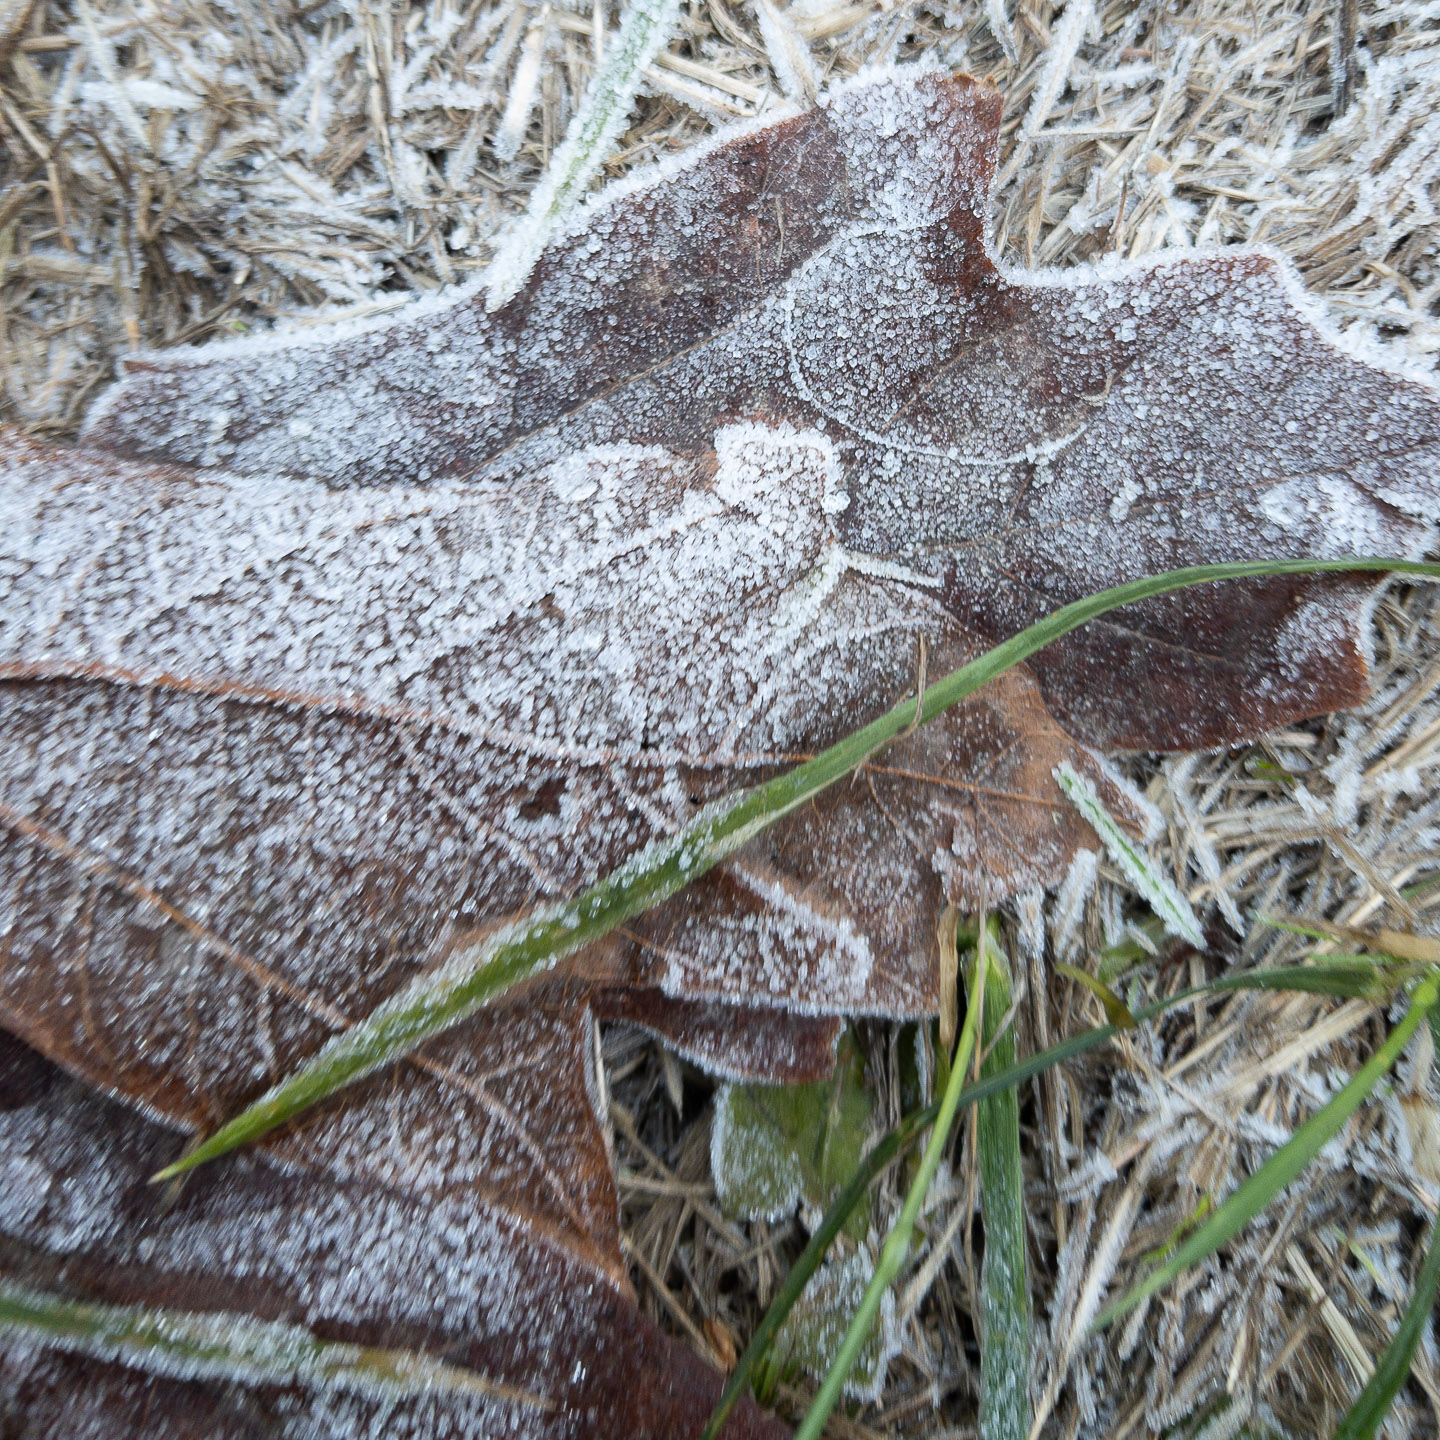 Frost on fallen leaves